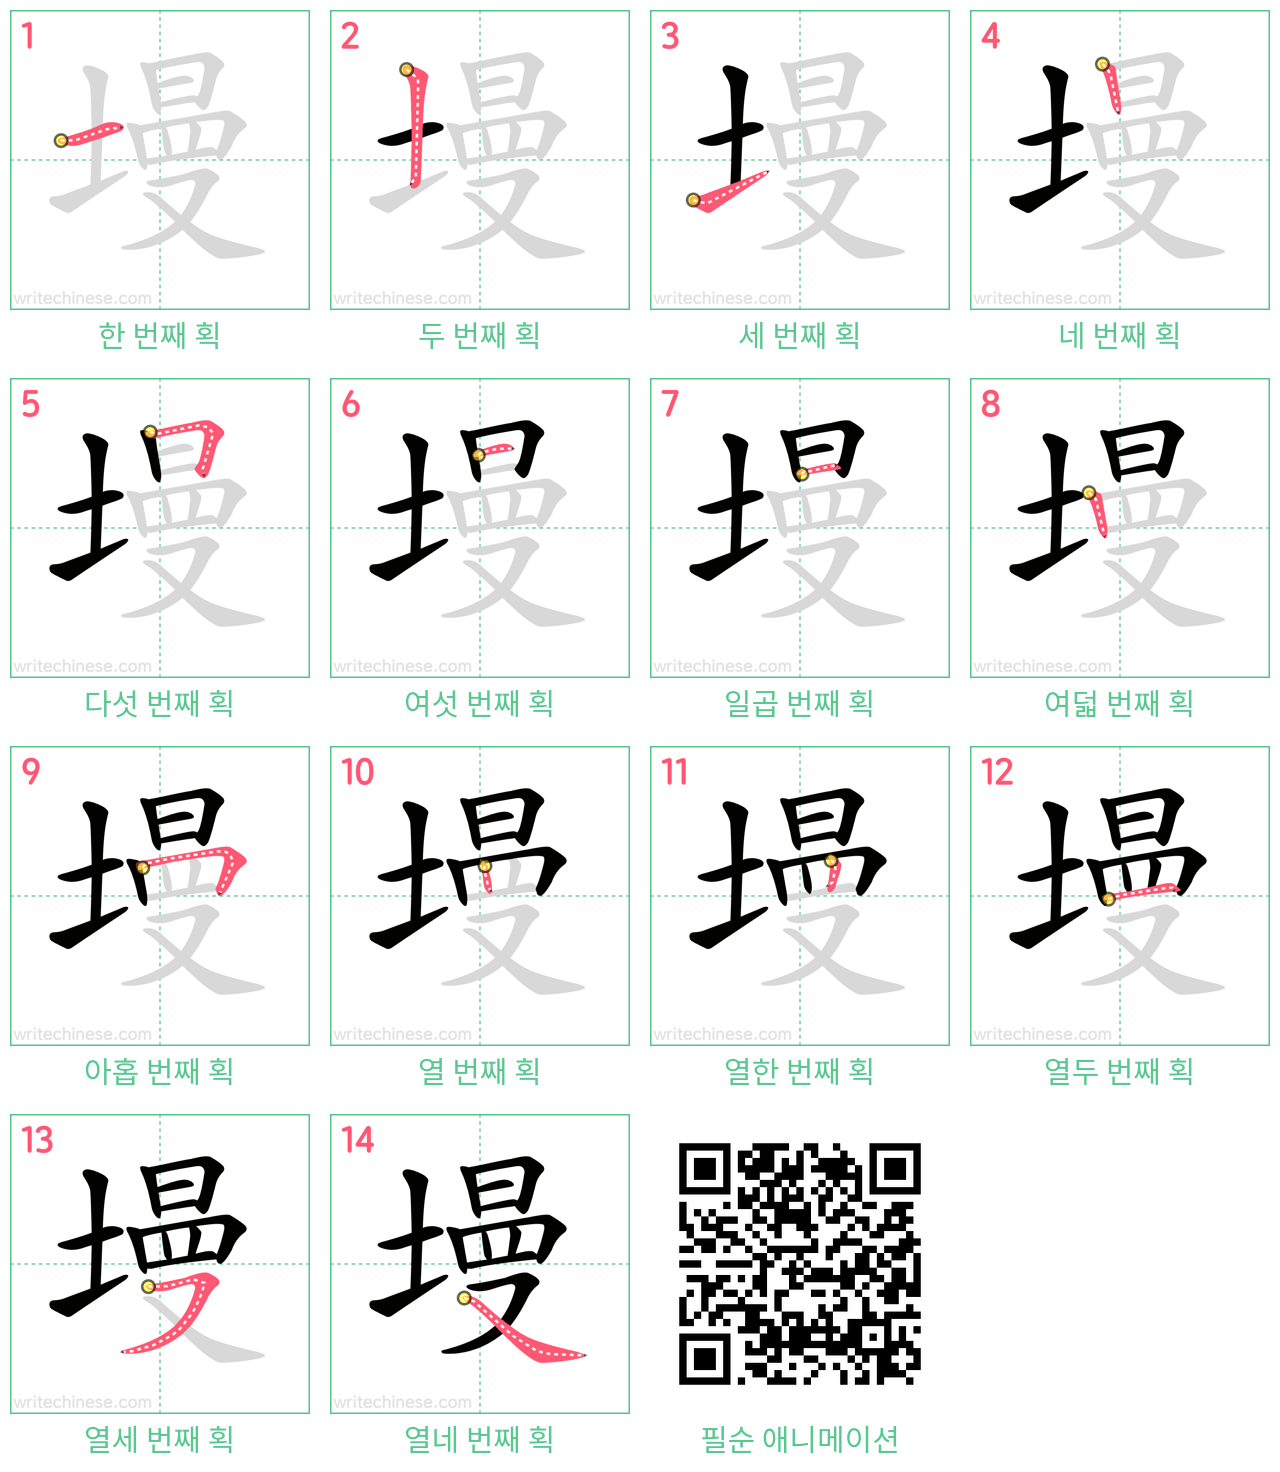 墁 step-by-step stroke order diagrams